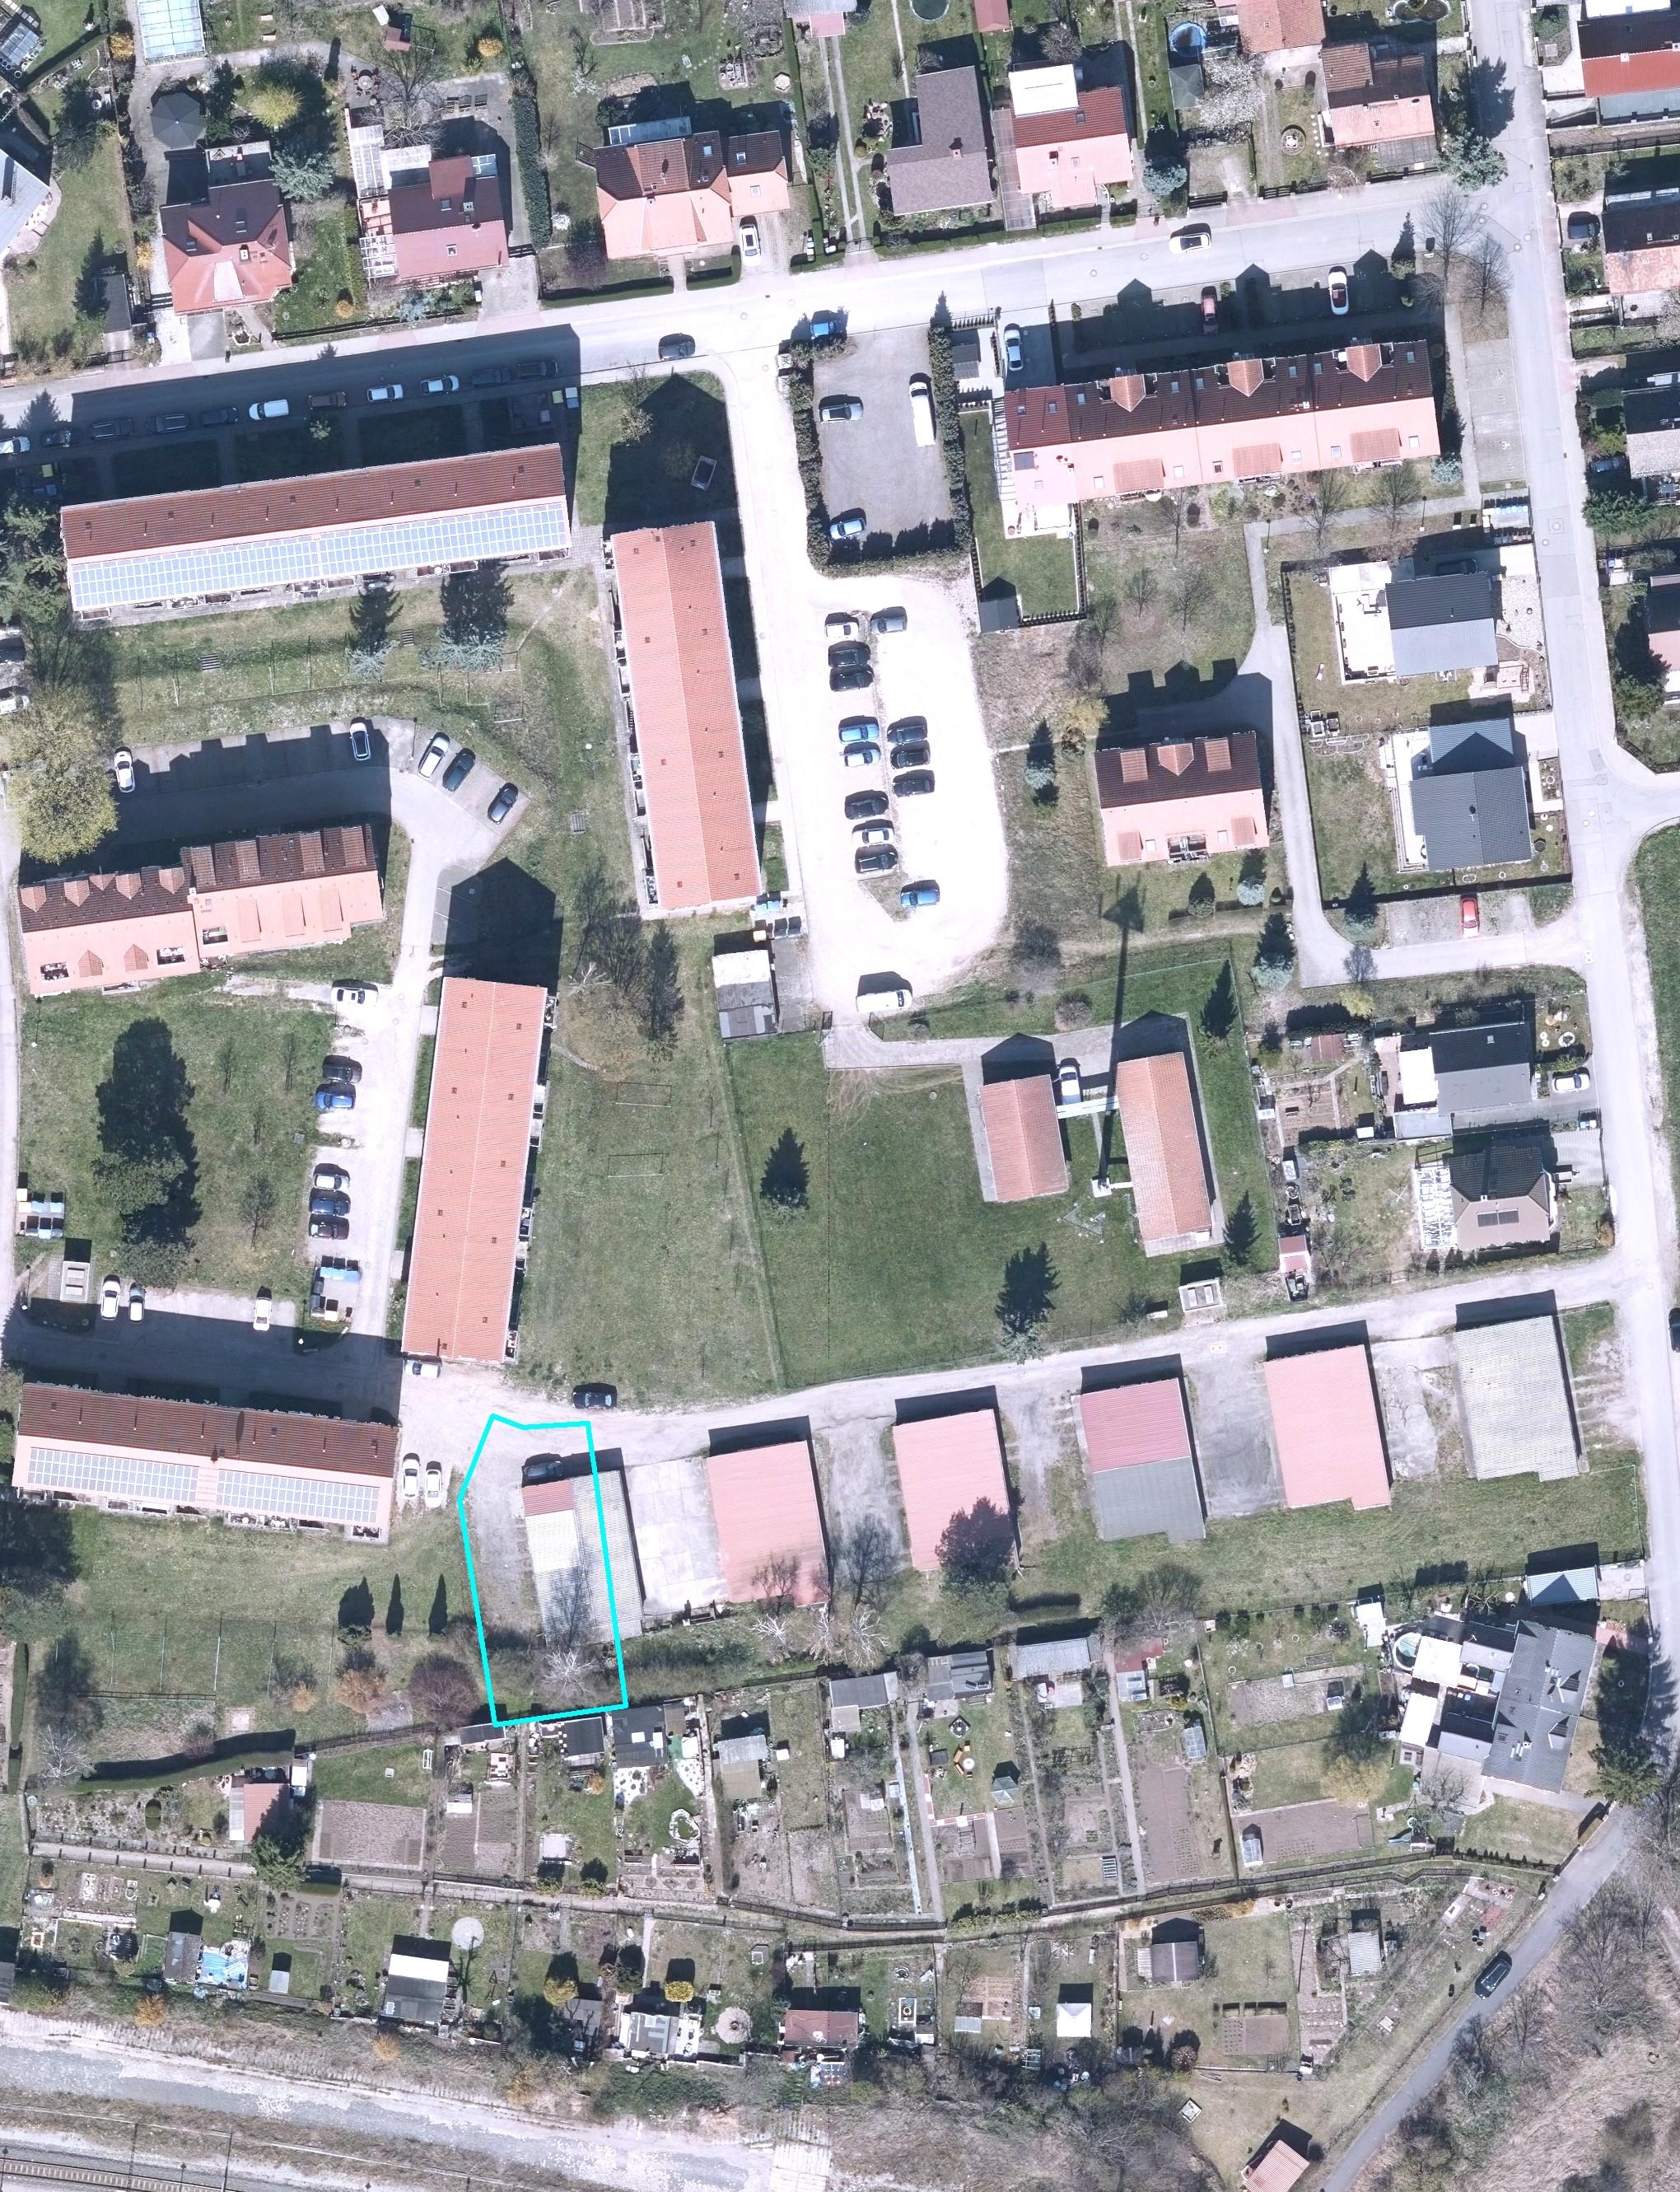 Verkauf eines Grundstückes in Vieselbach (Garagenkomplex mit 5 Einheiten)